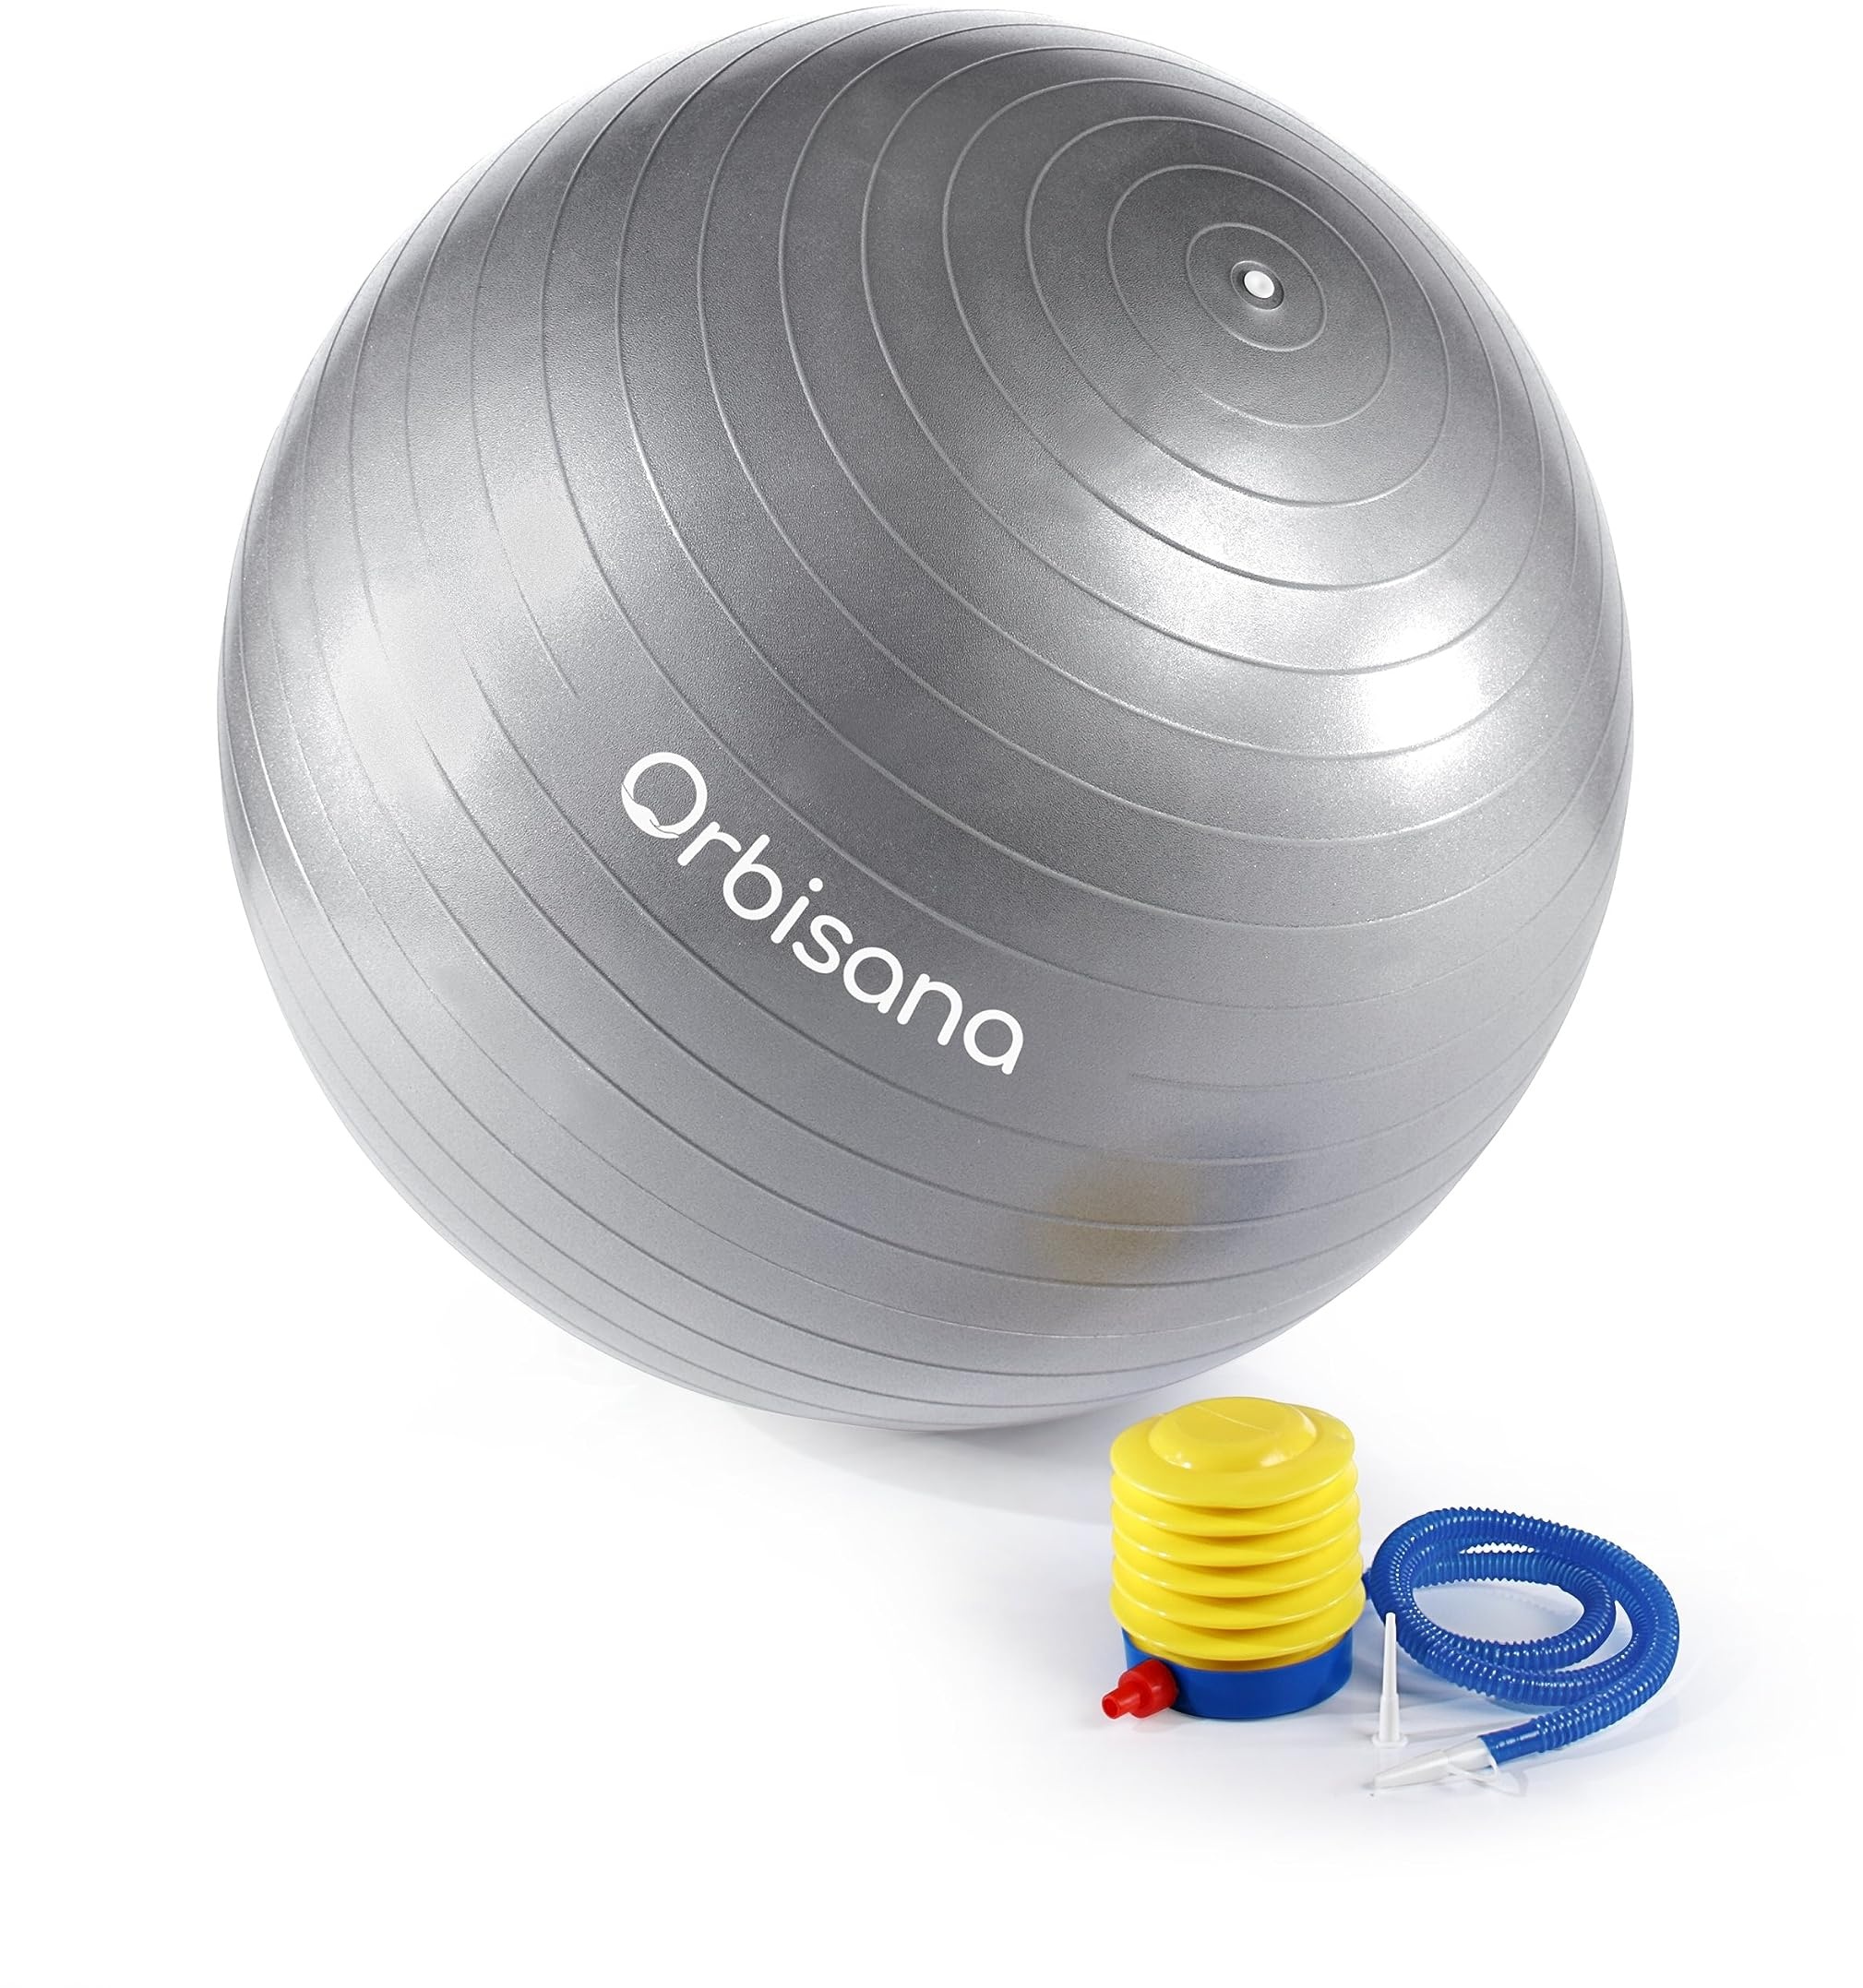 Orbisana Weltbild Gymnastikball - Premium Sitz- und Fitnessball, Ø 65 cm, Silber-Grau, inkl. Fußpumpe, belastbar bis 300 kg